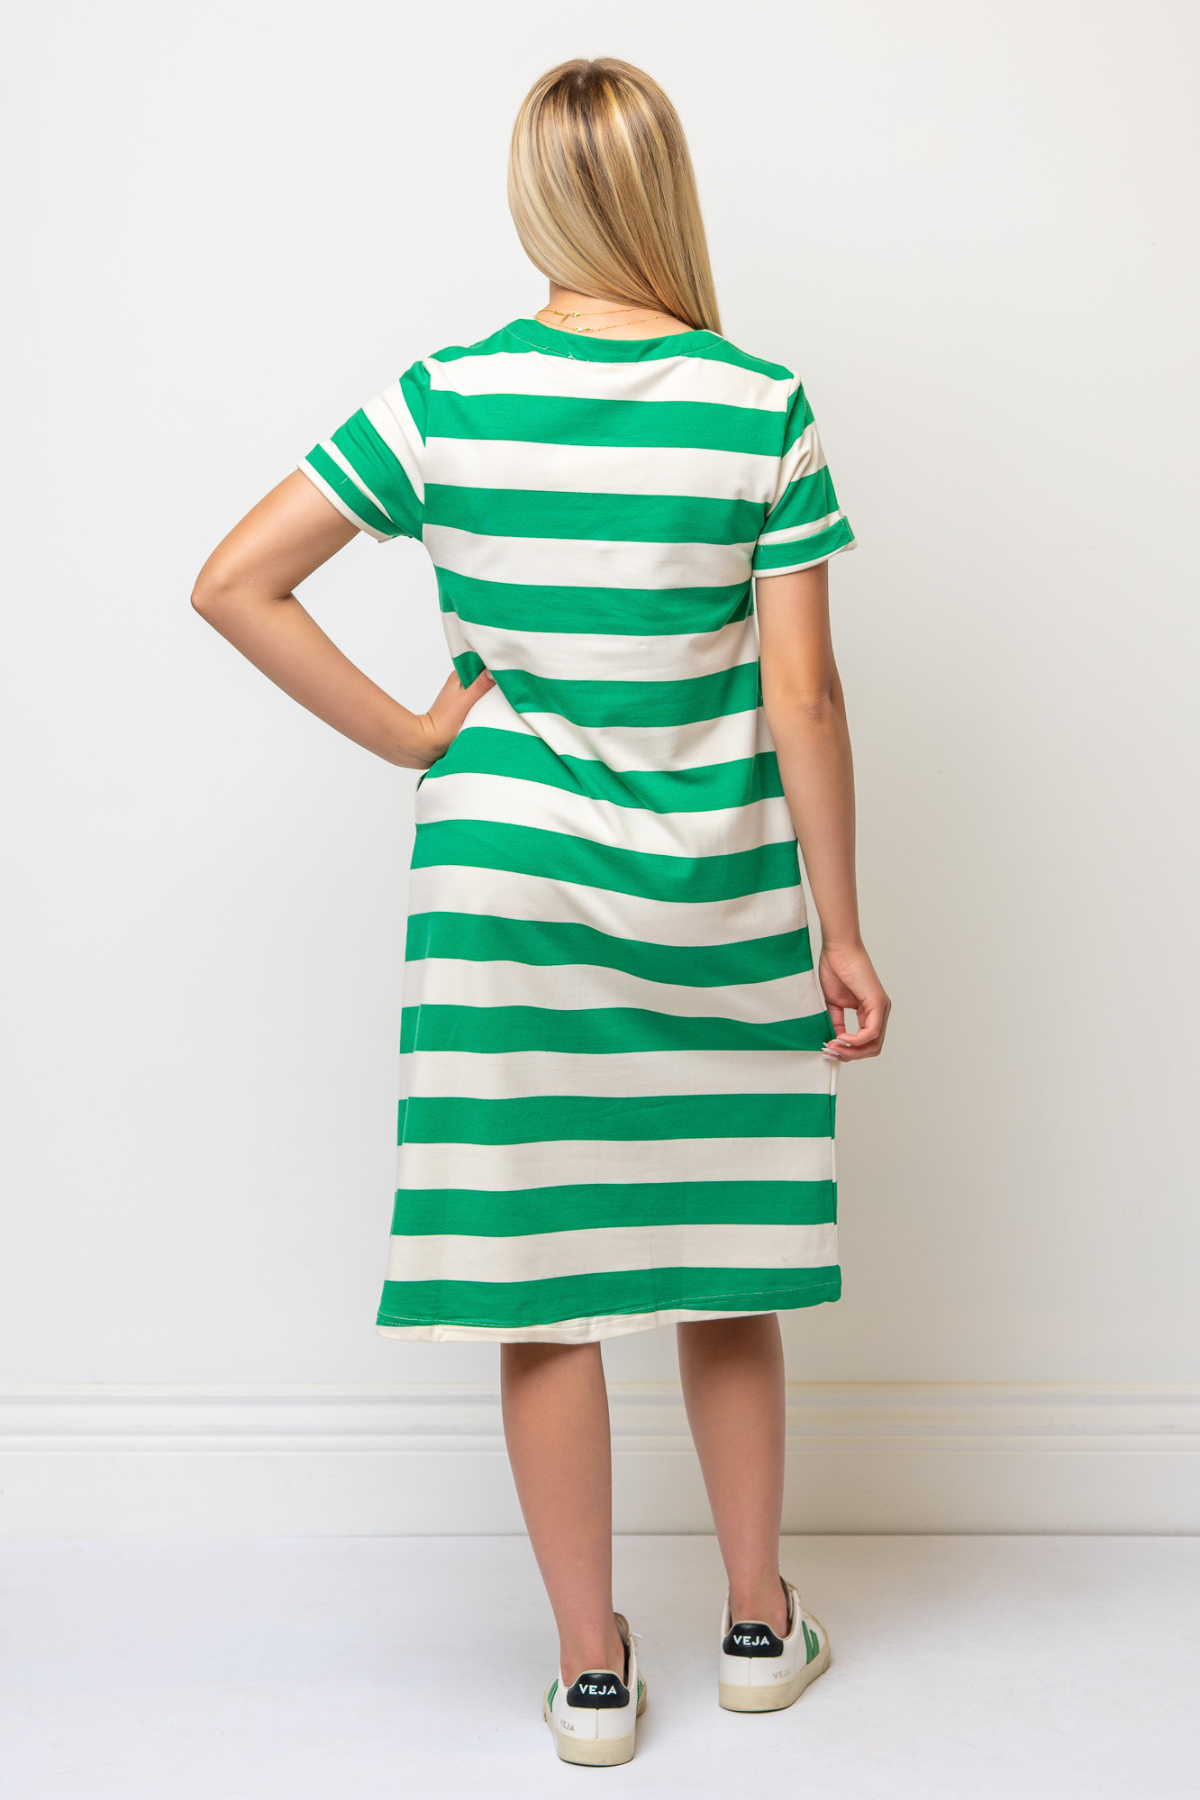 Celine Stripe Dress in Green